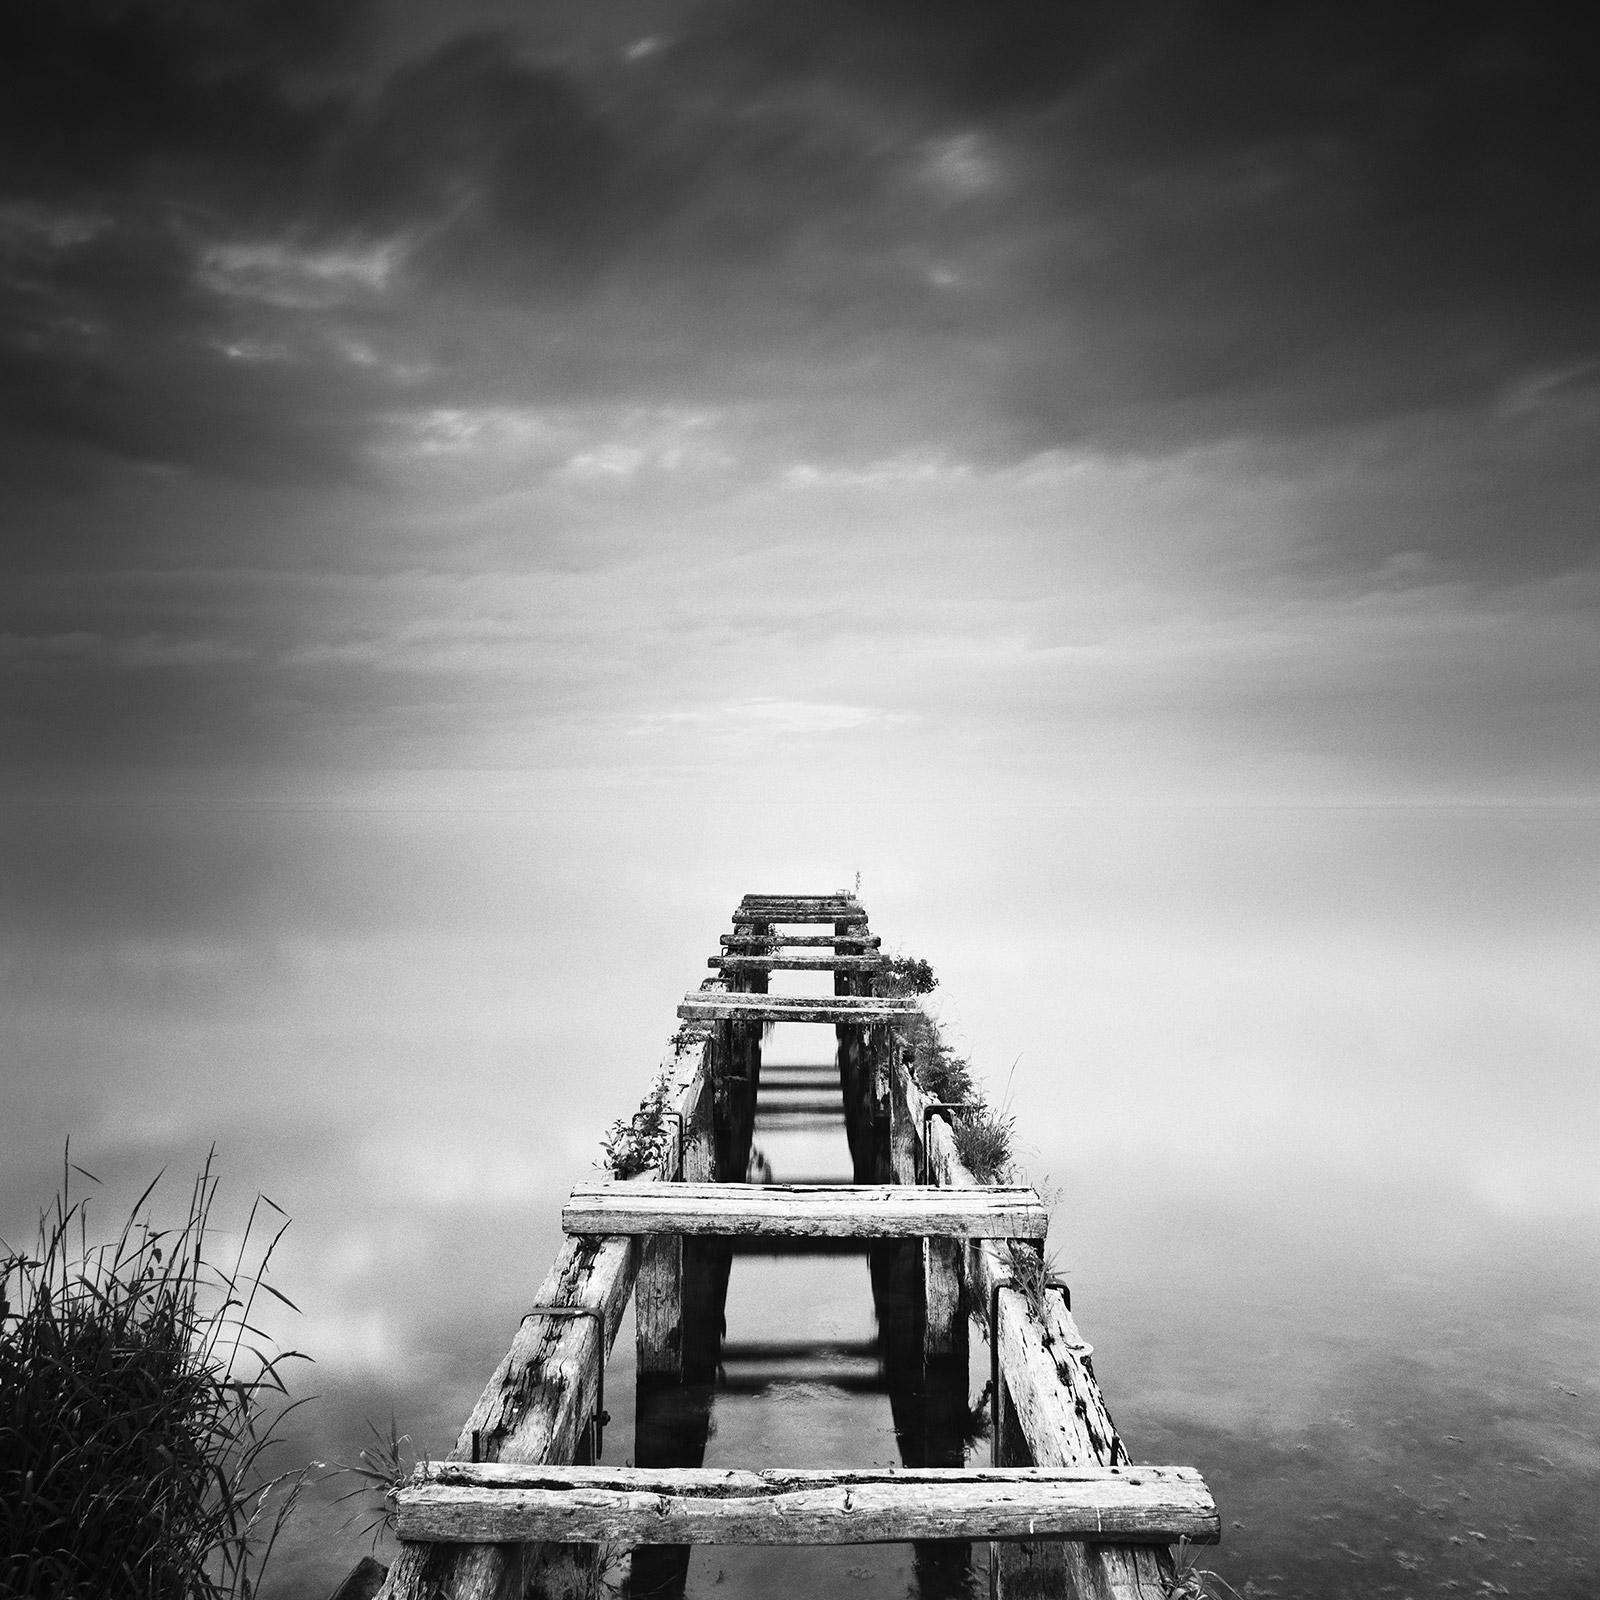 Abandoned Pier, foggy, sunset, Ireland, black and white seascape art photography